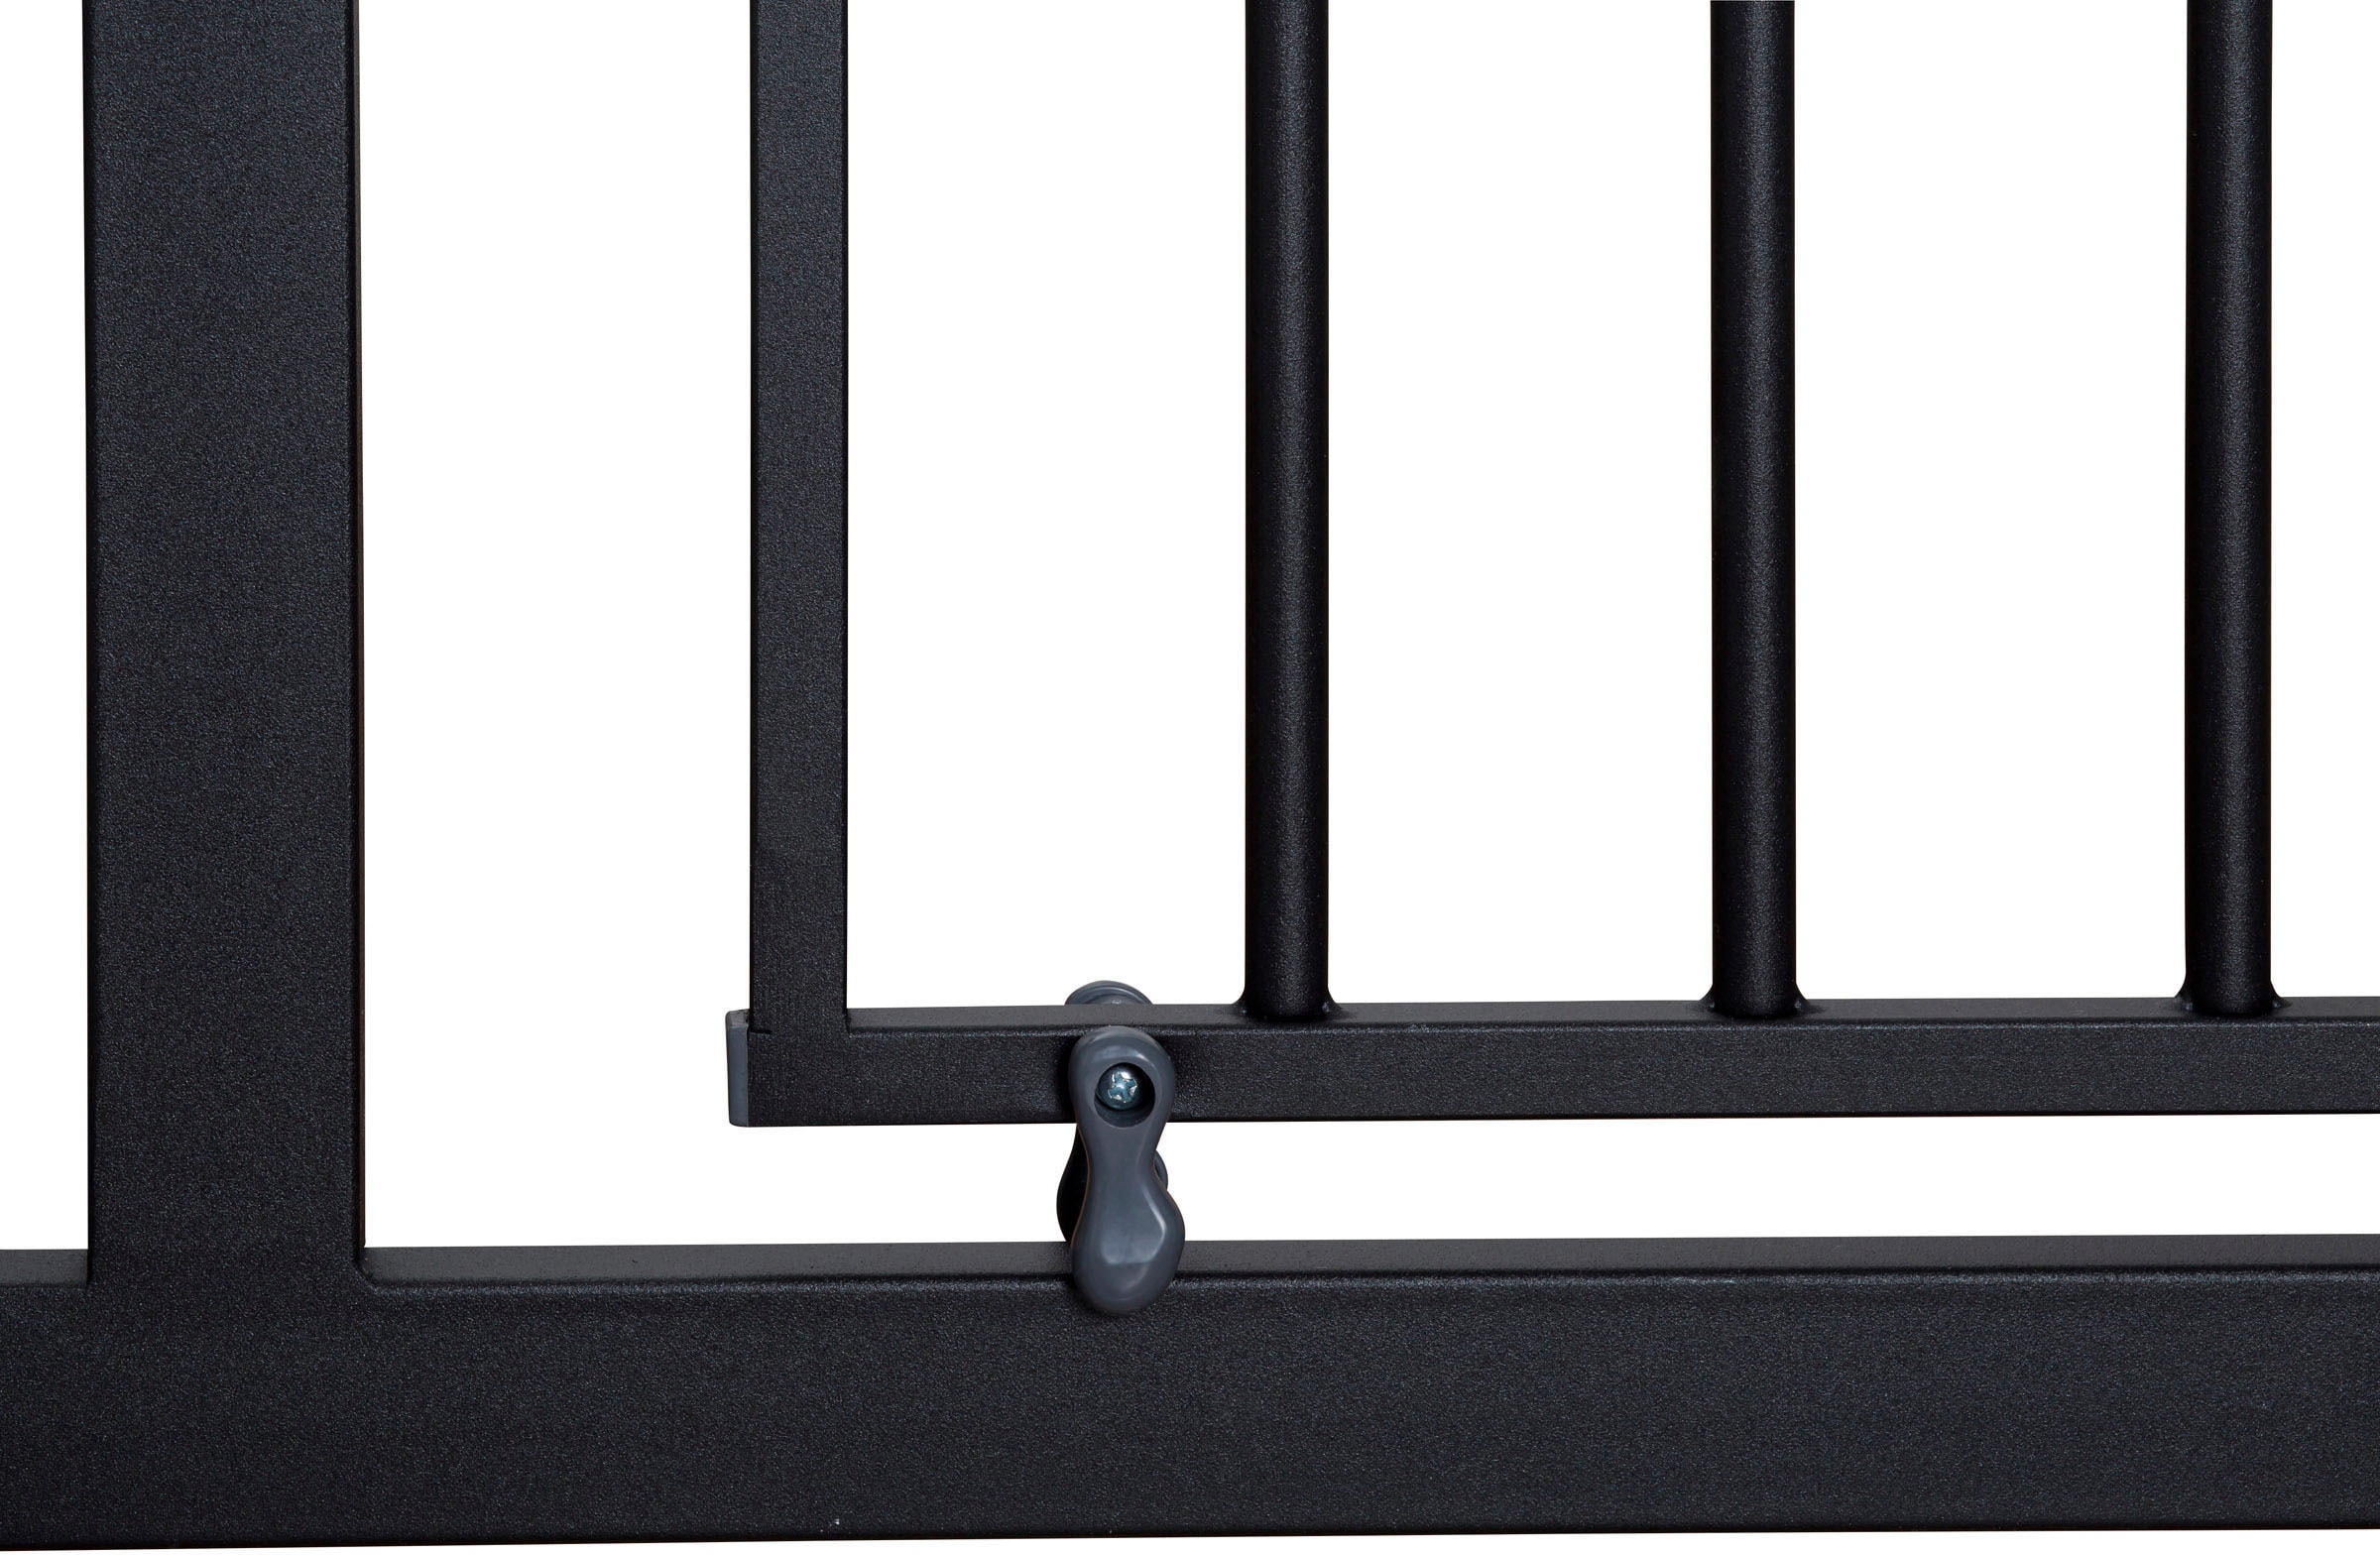 BabyGo Türschutzgitter »Safety Gate, schwarz«, auch als Treppenschutzgitter verwendbar; Made in Europe